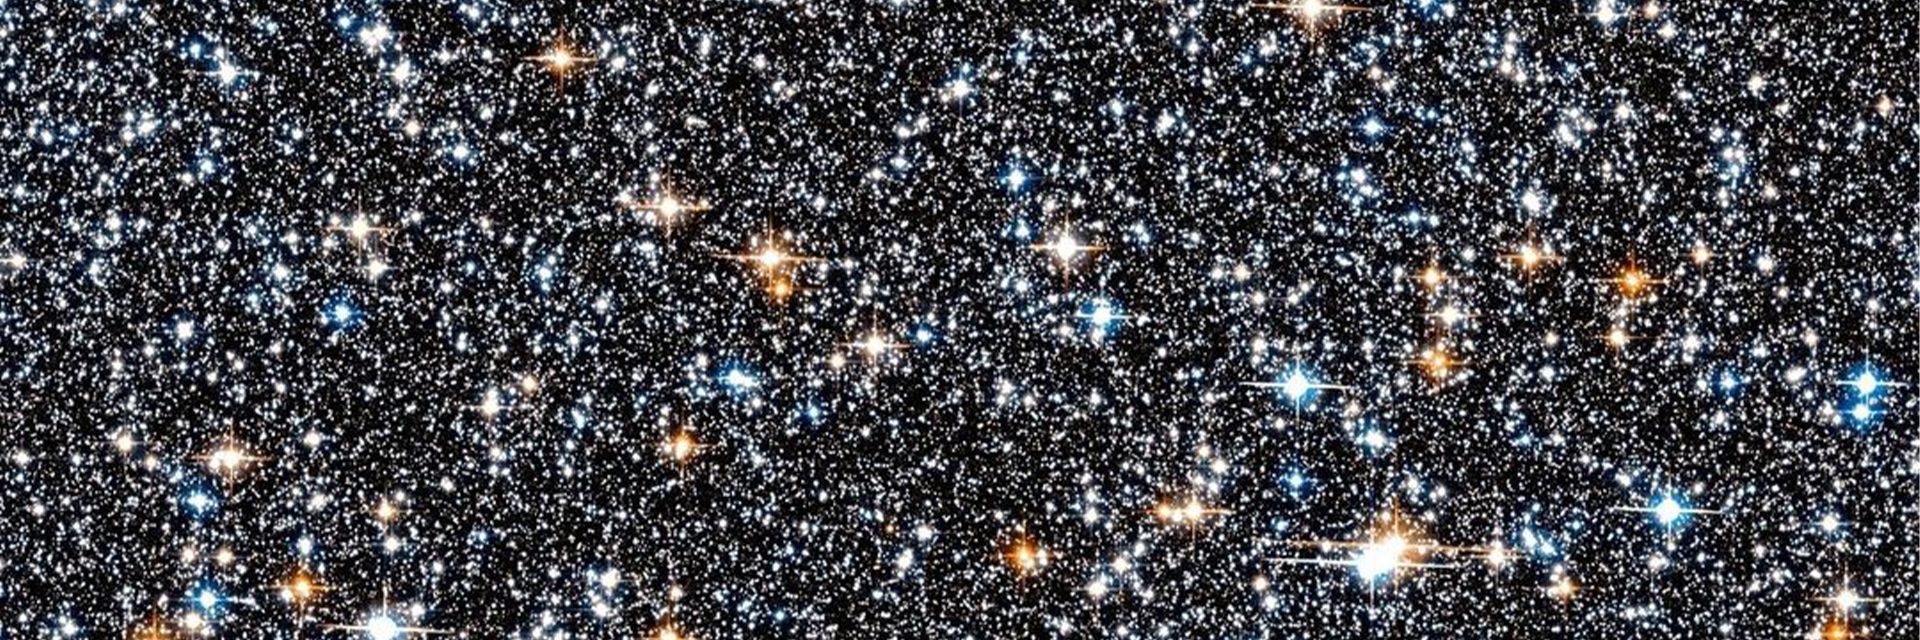 Het officiële handvat van NASA deelde de foto van een verzameling van deze galactische monumenten op 26,000 lichtjaar van de aarde, vastgelegd door de Hubble-telescoop.